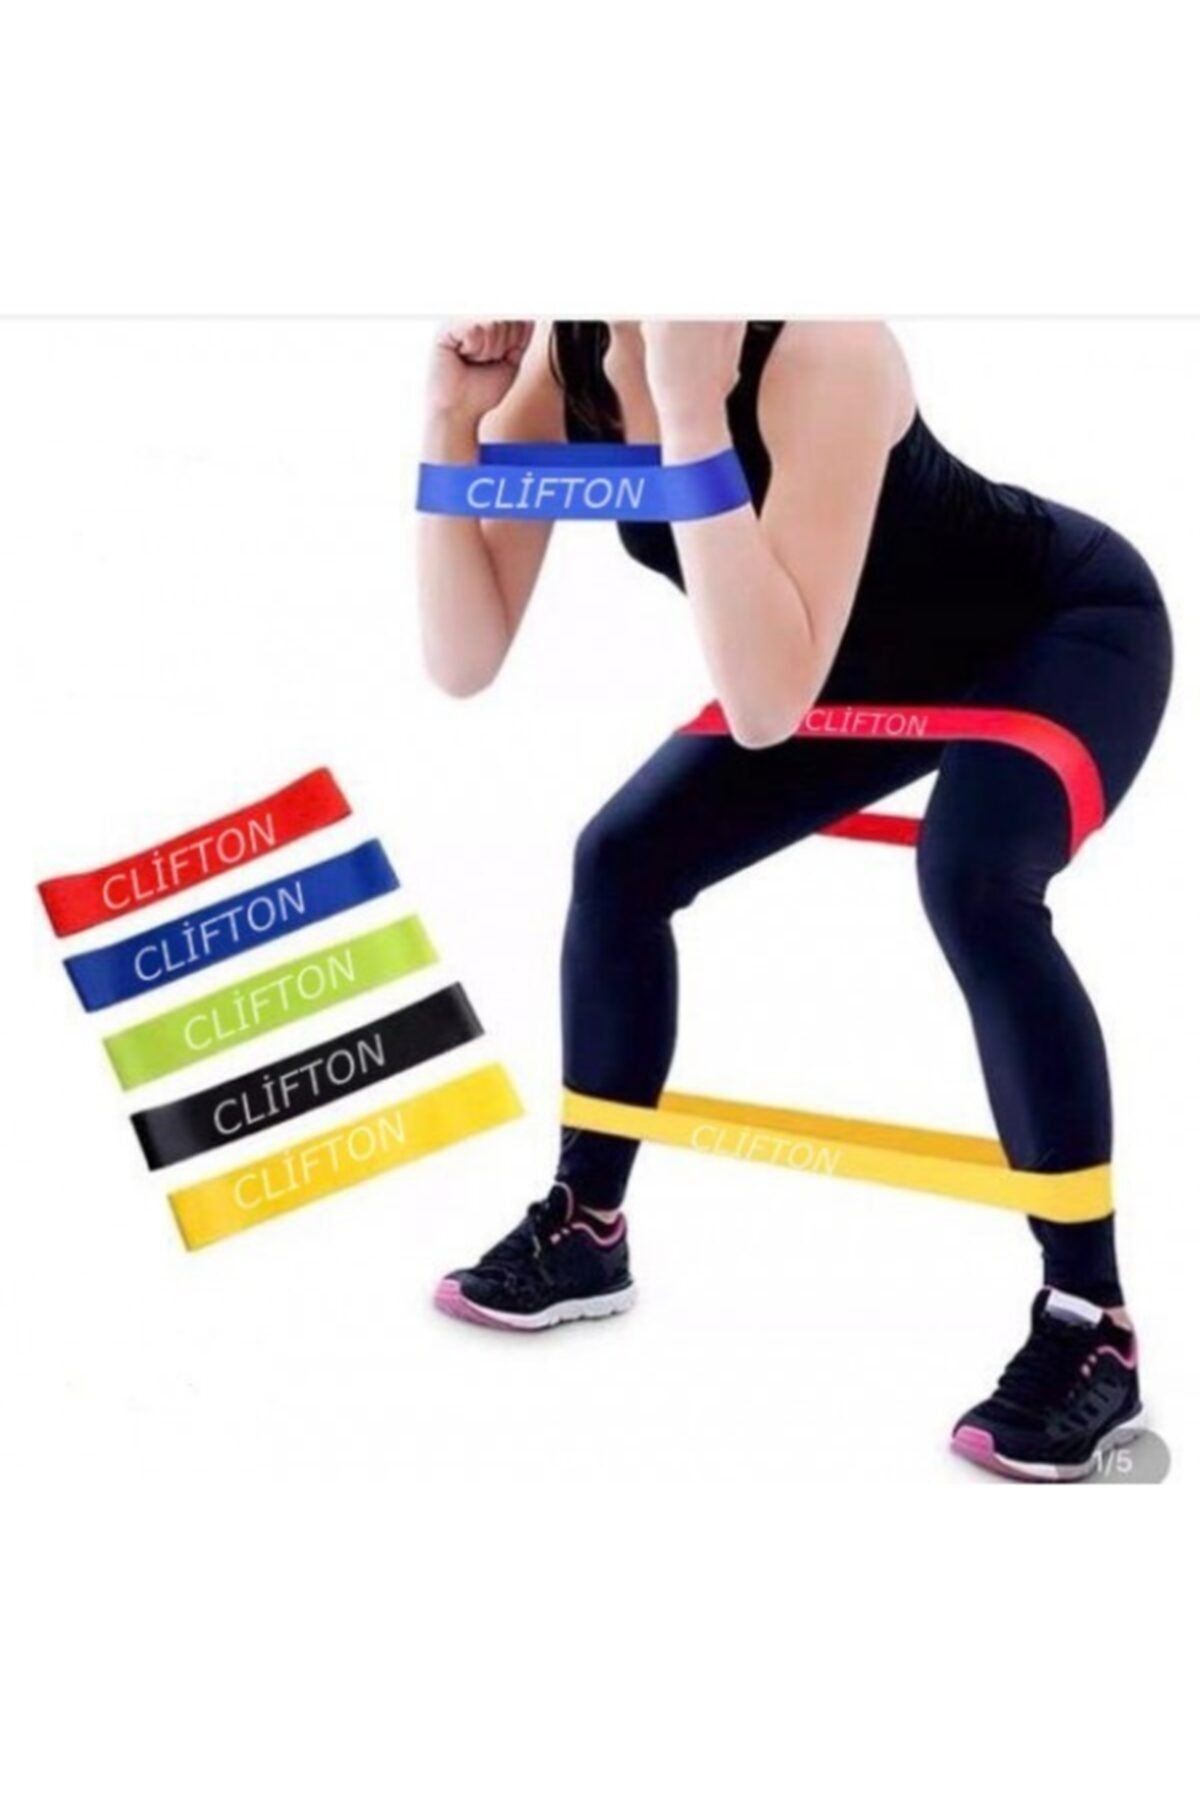 Leyaton Pilates Direnç Lastiği Aerobik Yoga Gym Egzersiz Bandı Spor Seti Plates 5'li Bant Seti